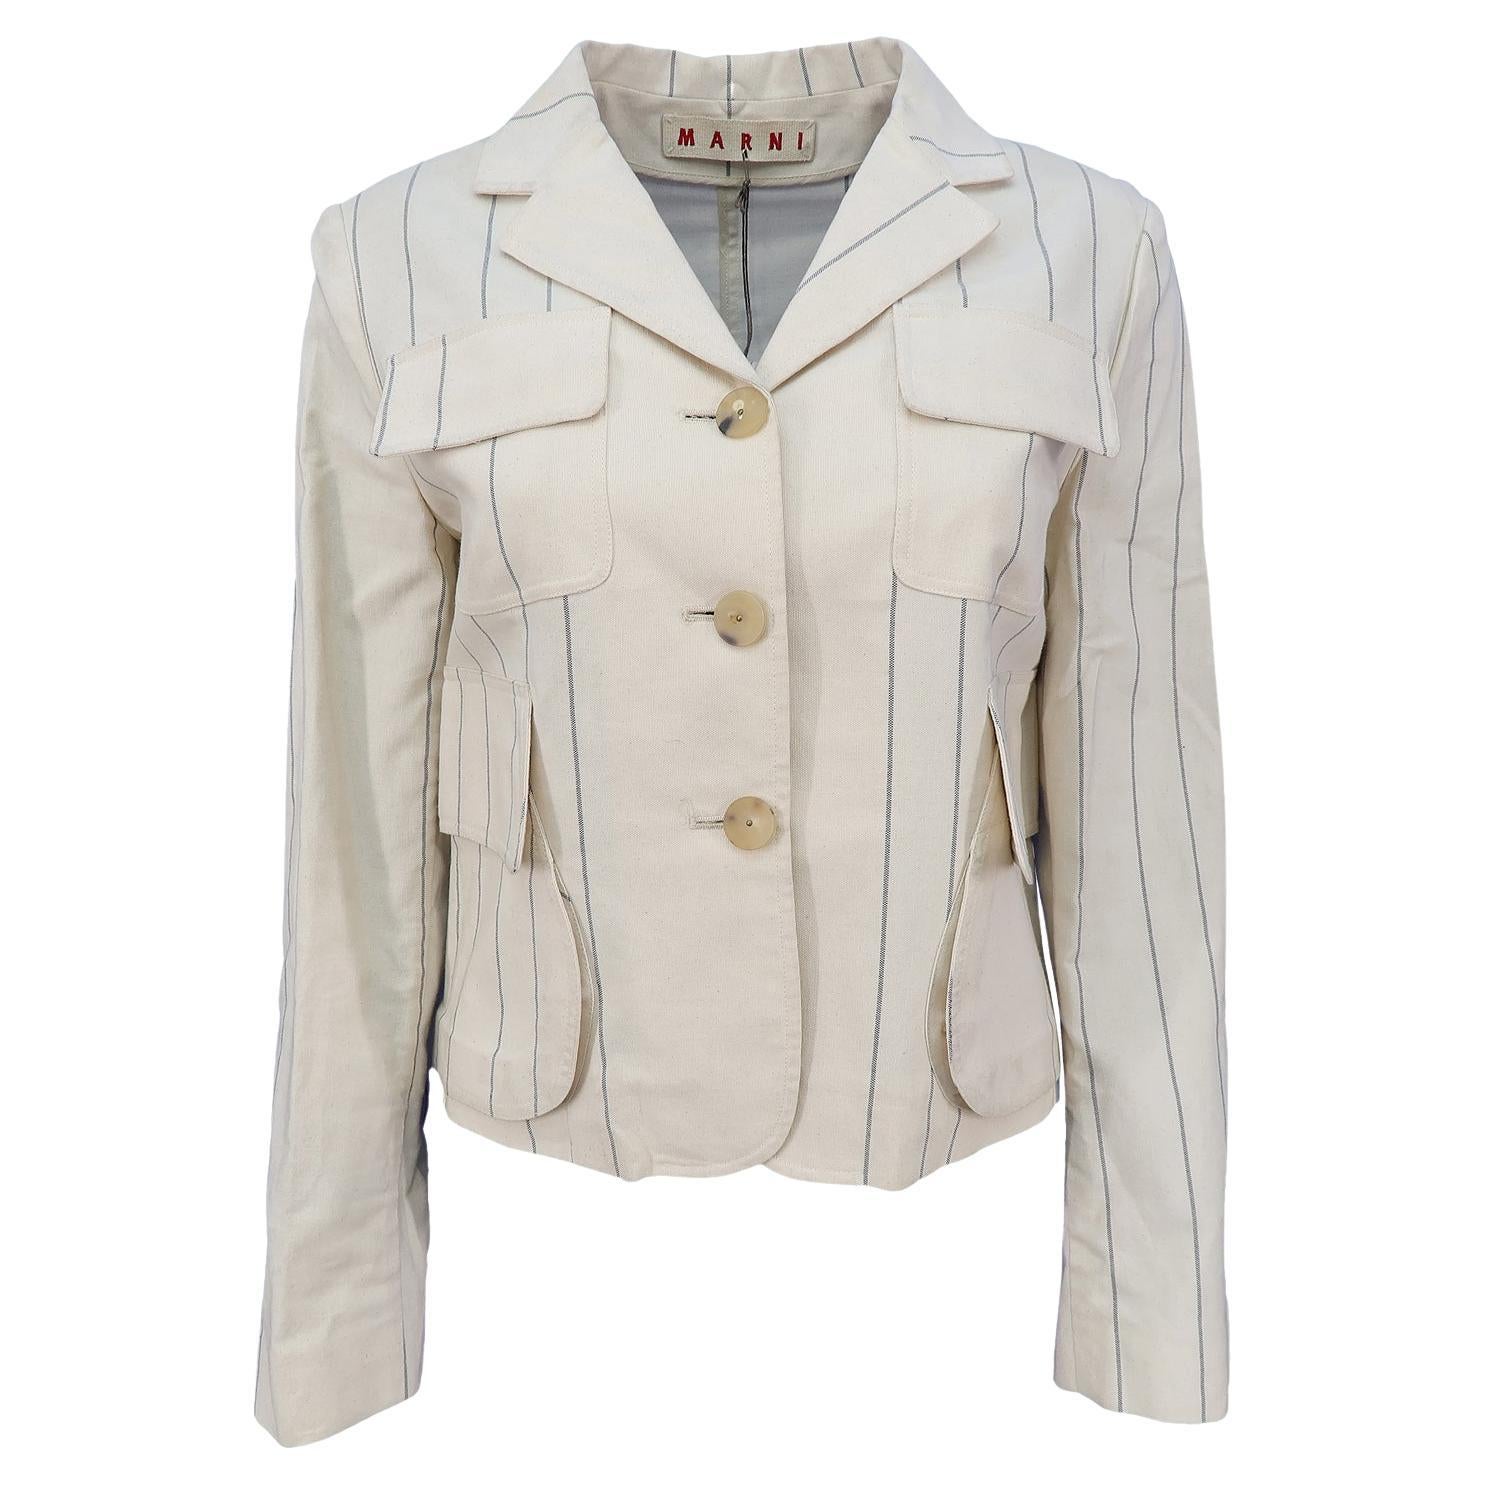 Marni by Consuelo Castiglioni SS-2003 Cotton Stripe Motif Cropped Jacket